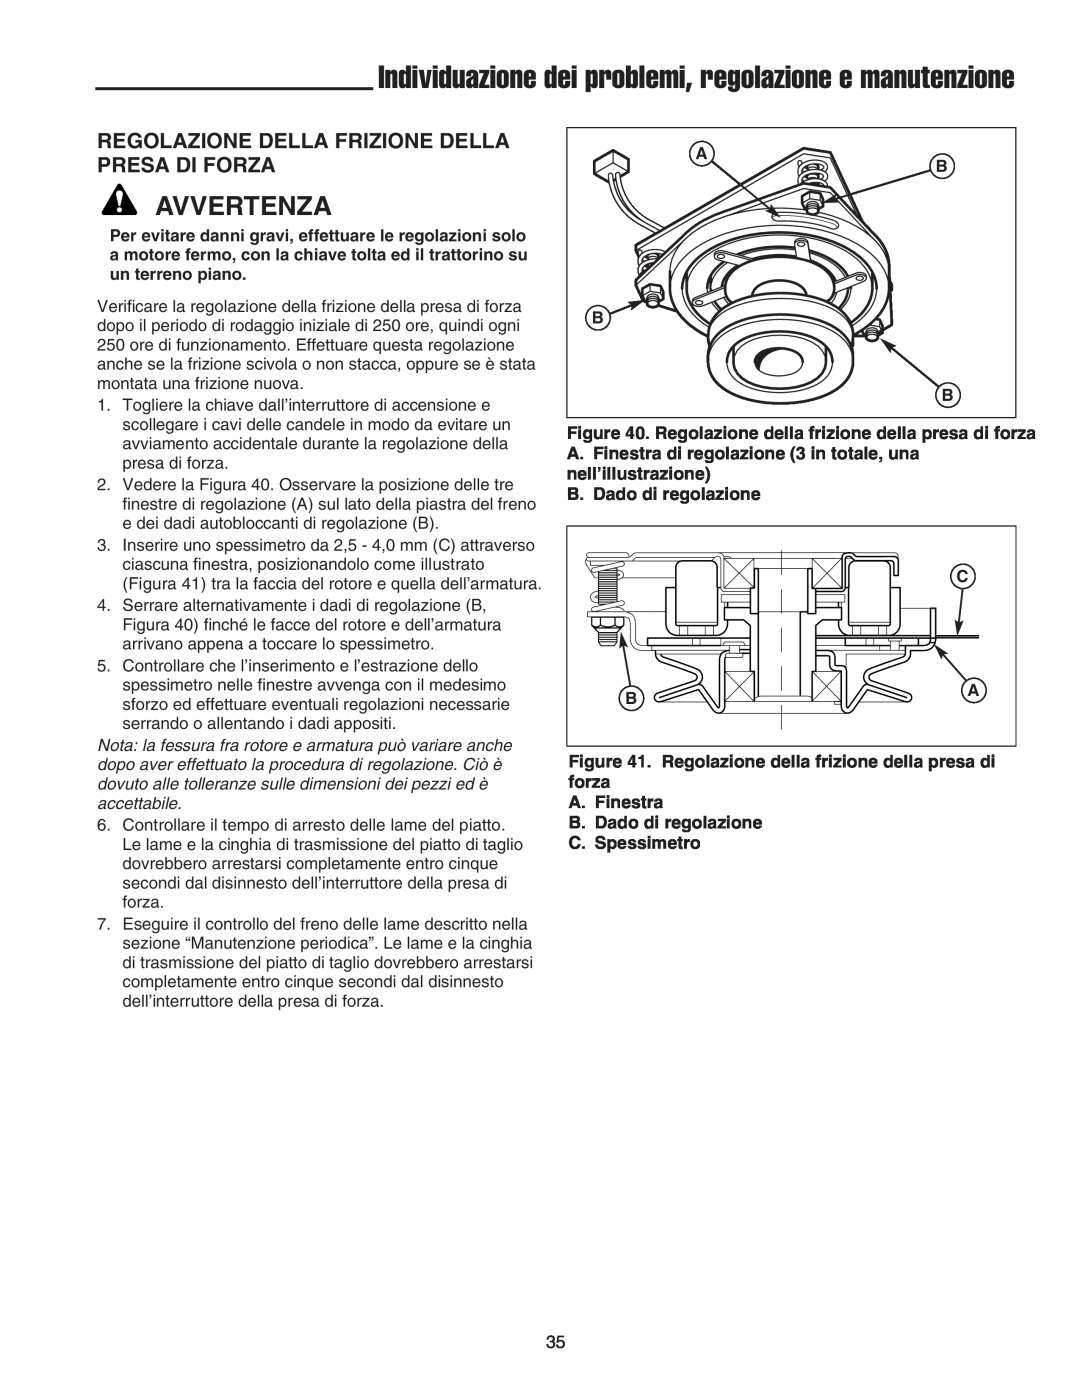 Briggs & Stratton Printer instruction sheet Regolazione Della Frizione Della Presa Di Forza, Avvertenza 